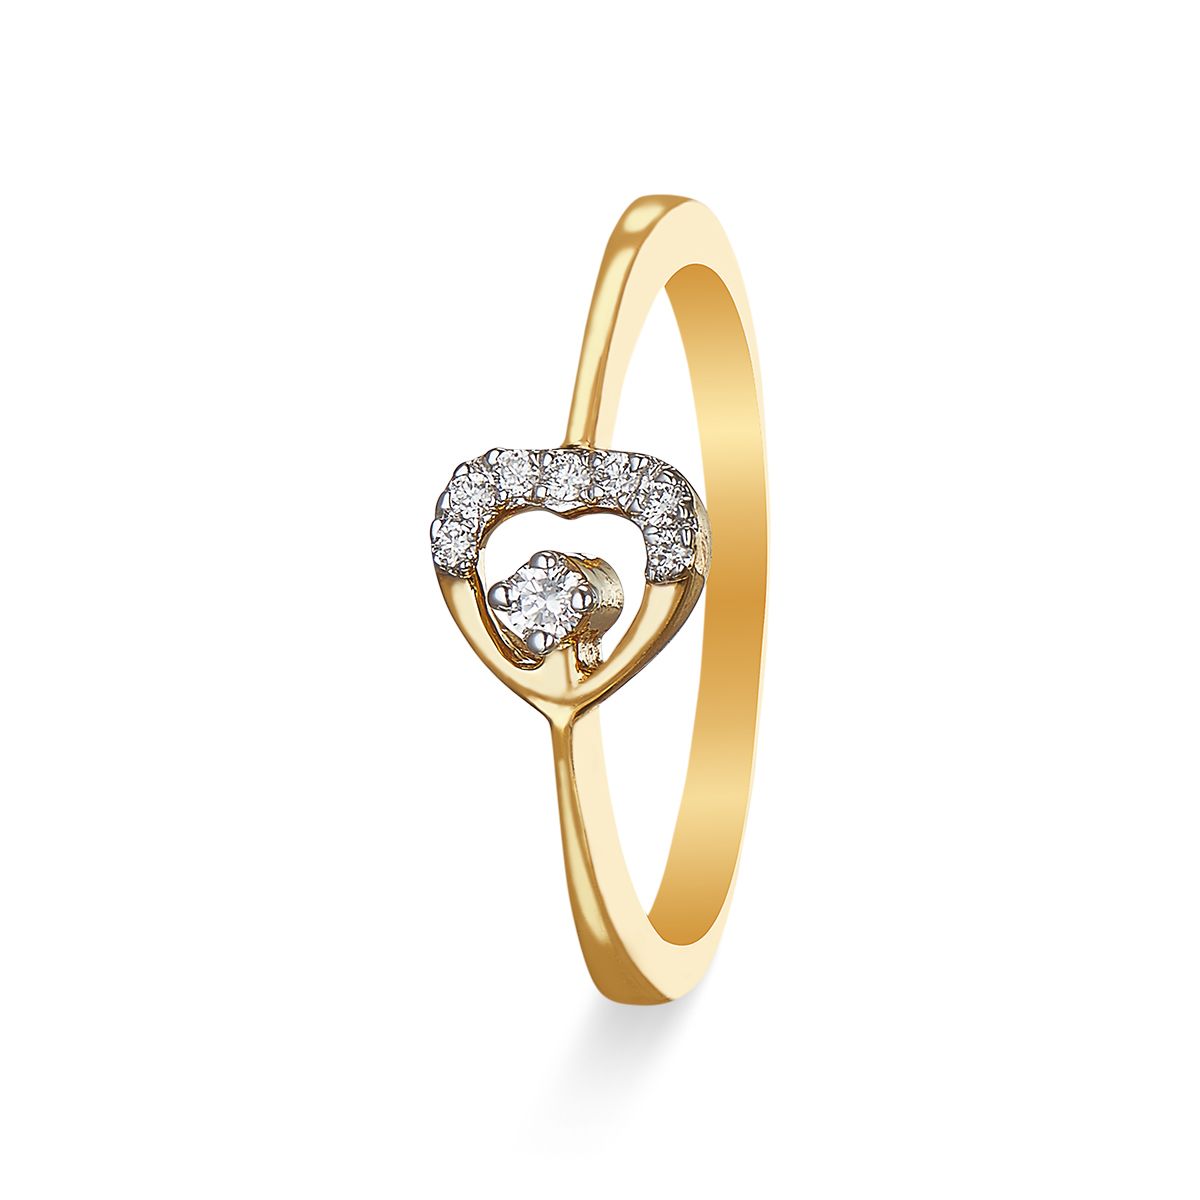 Shop Premium Diamond Rings Online In India At Best Prices | Tata CLiQ